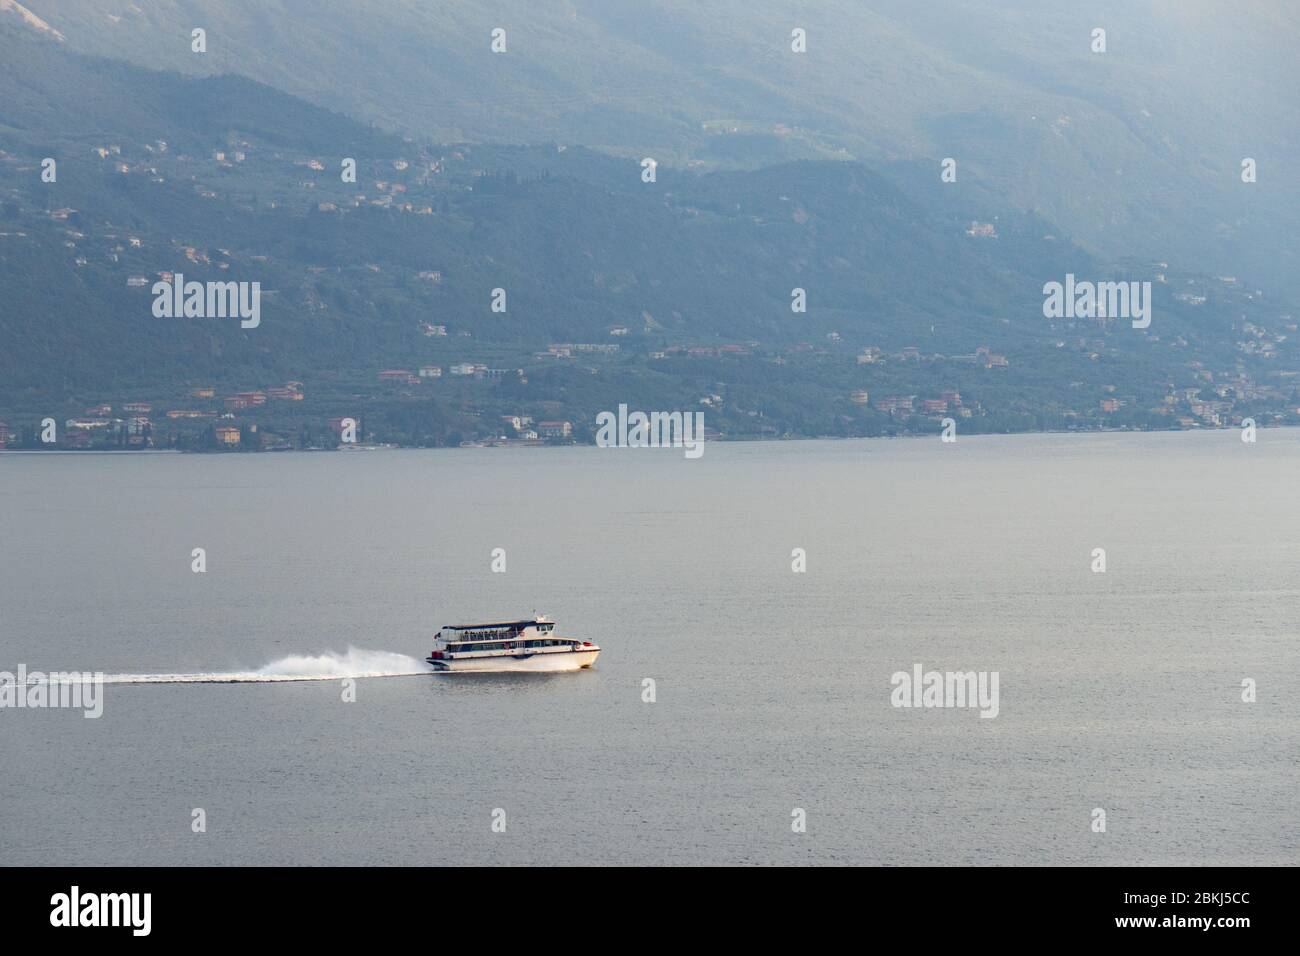 Piccola barca passeggeri che trasporta turisti sul lago di Garda, nel nord Italia. Bel paesaggio sullo sfondo. Foto Stock